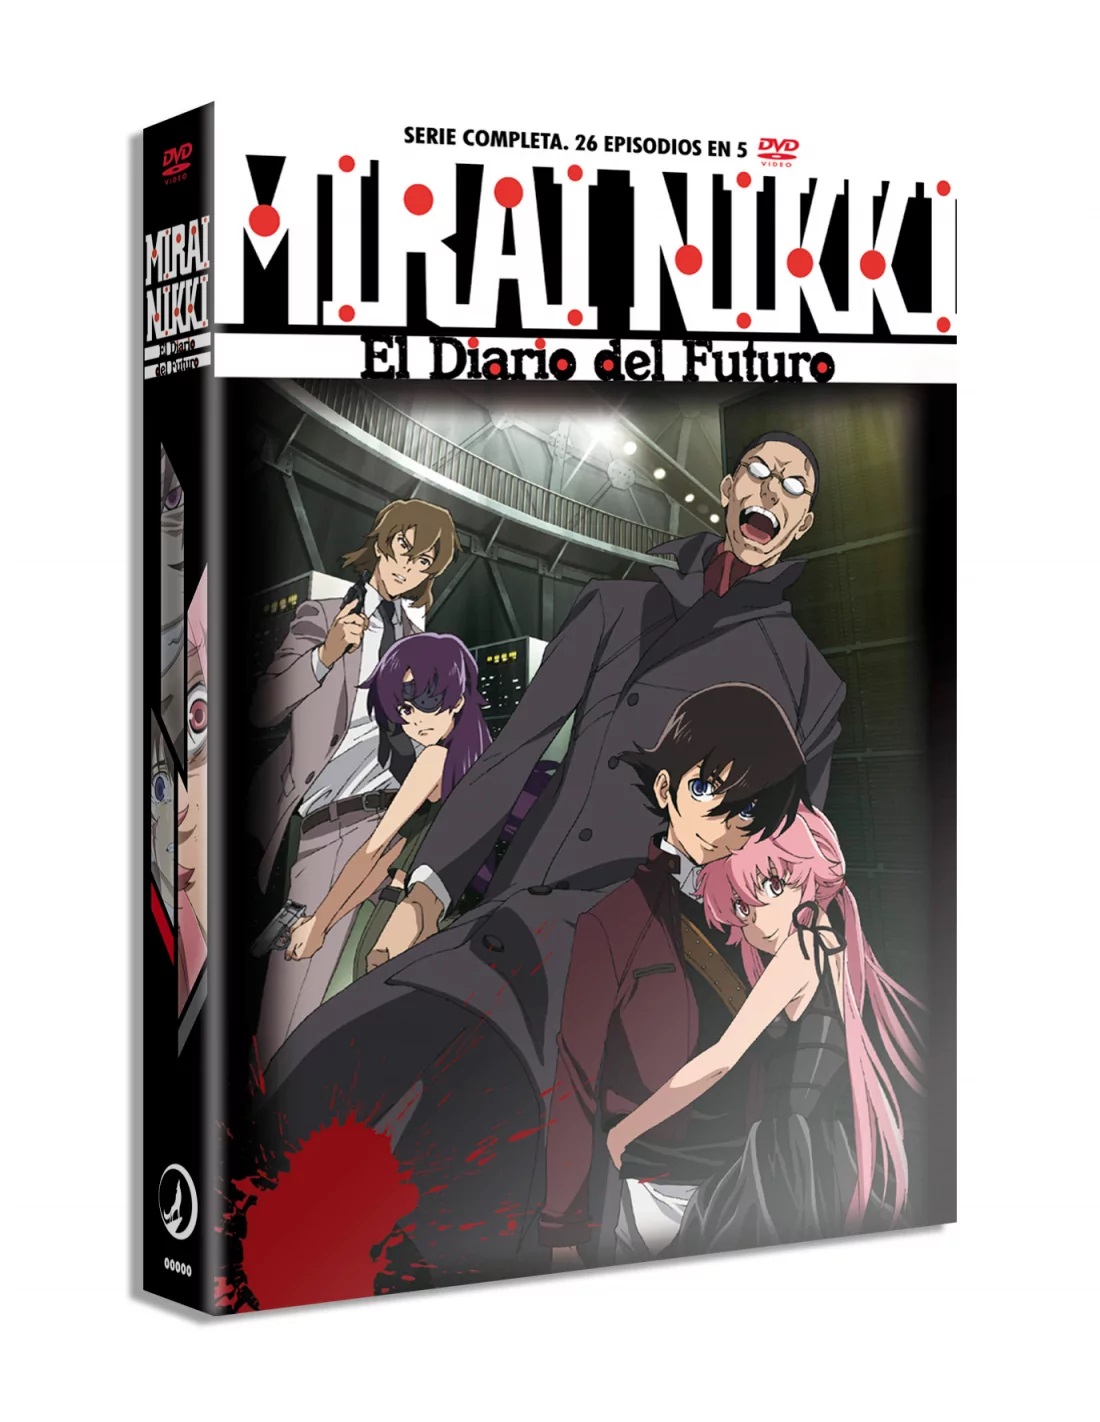 Mirai Nikki llega a Anime Box, con un capítulo de estreno cada martes